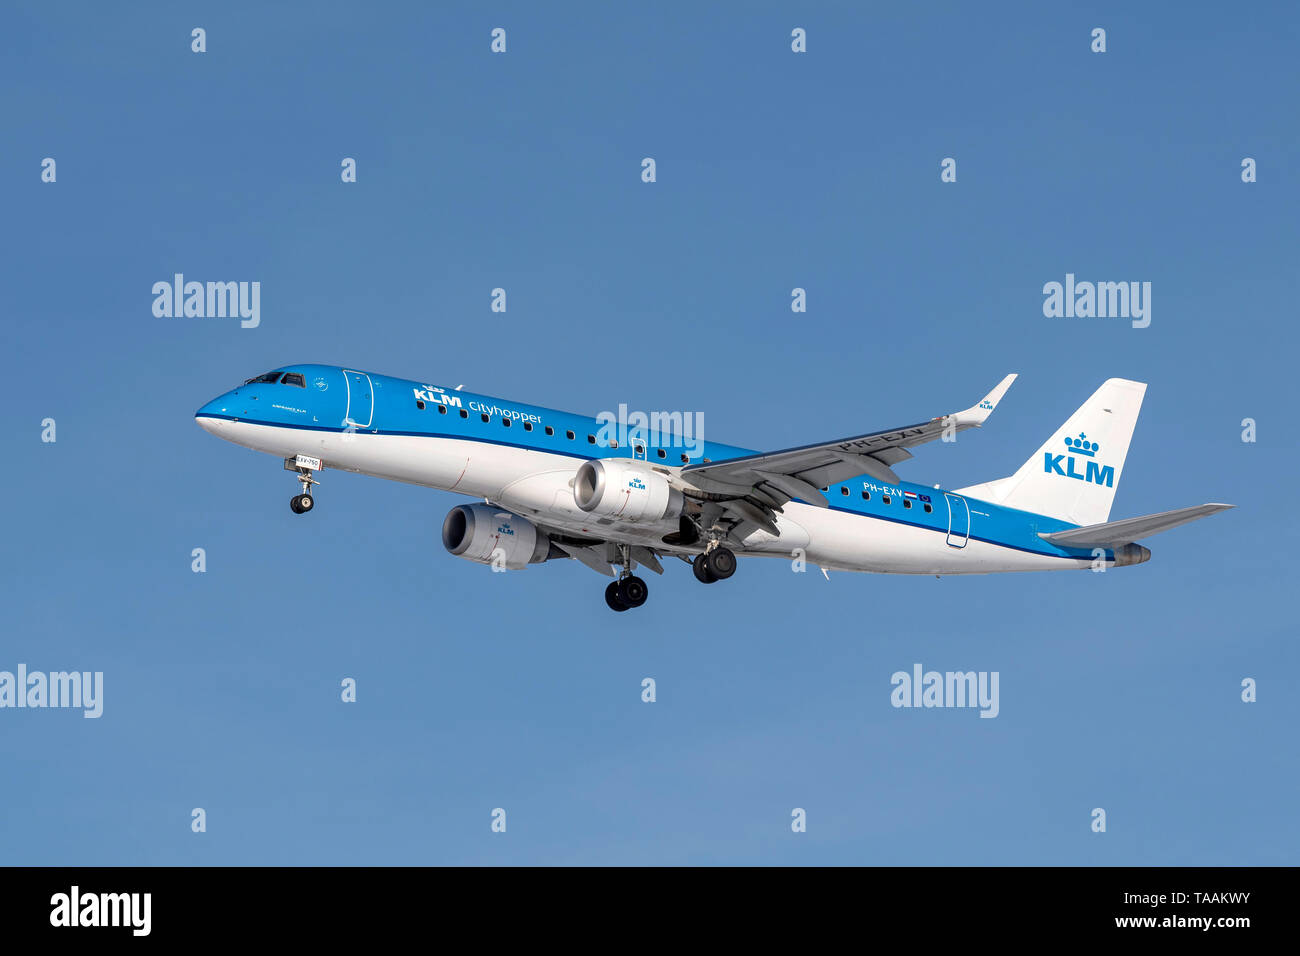 München, Deutschland - 08. Februar 2019: KLM Embraer ERJ-190 STD mit dem Flugzeug Registrierung PH-EXV in der Annäherung an die nördliche Landebahn des München Stockfoto